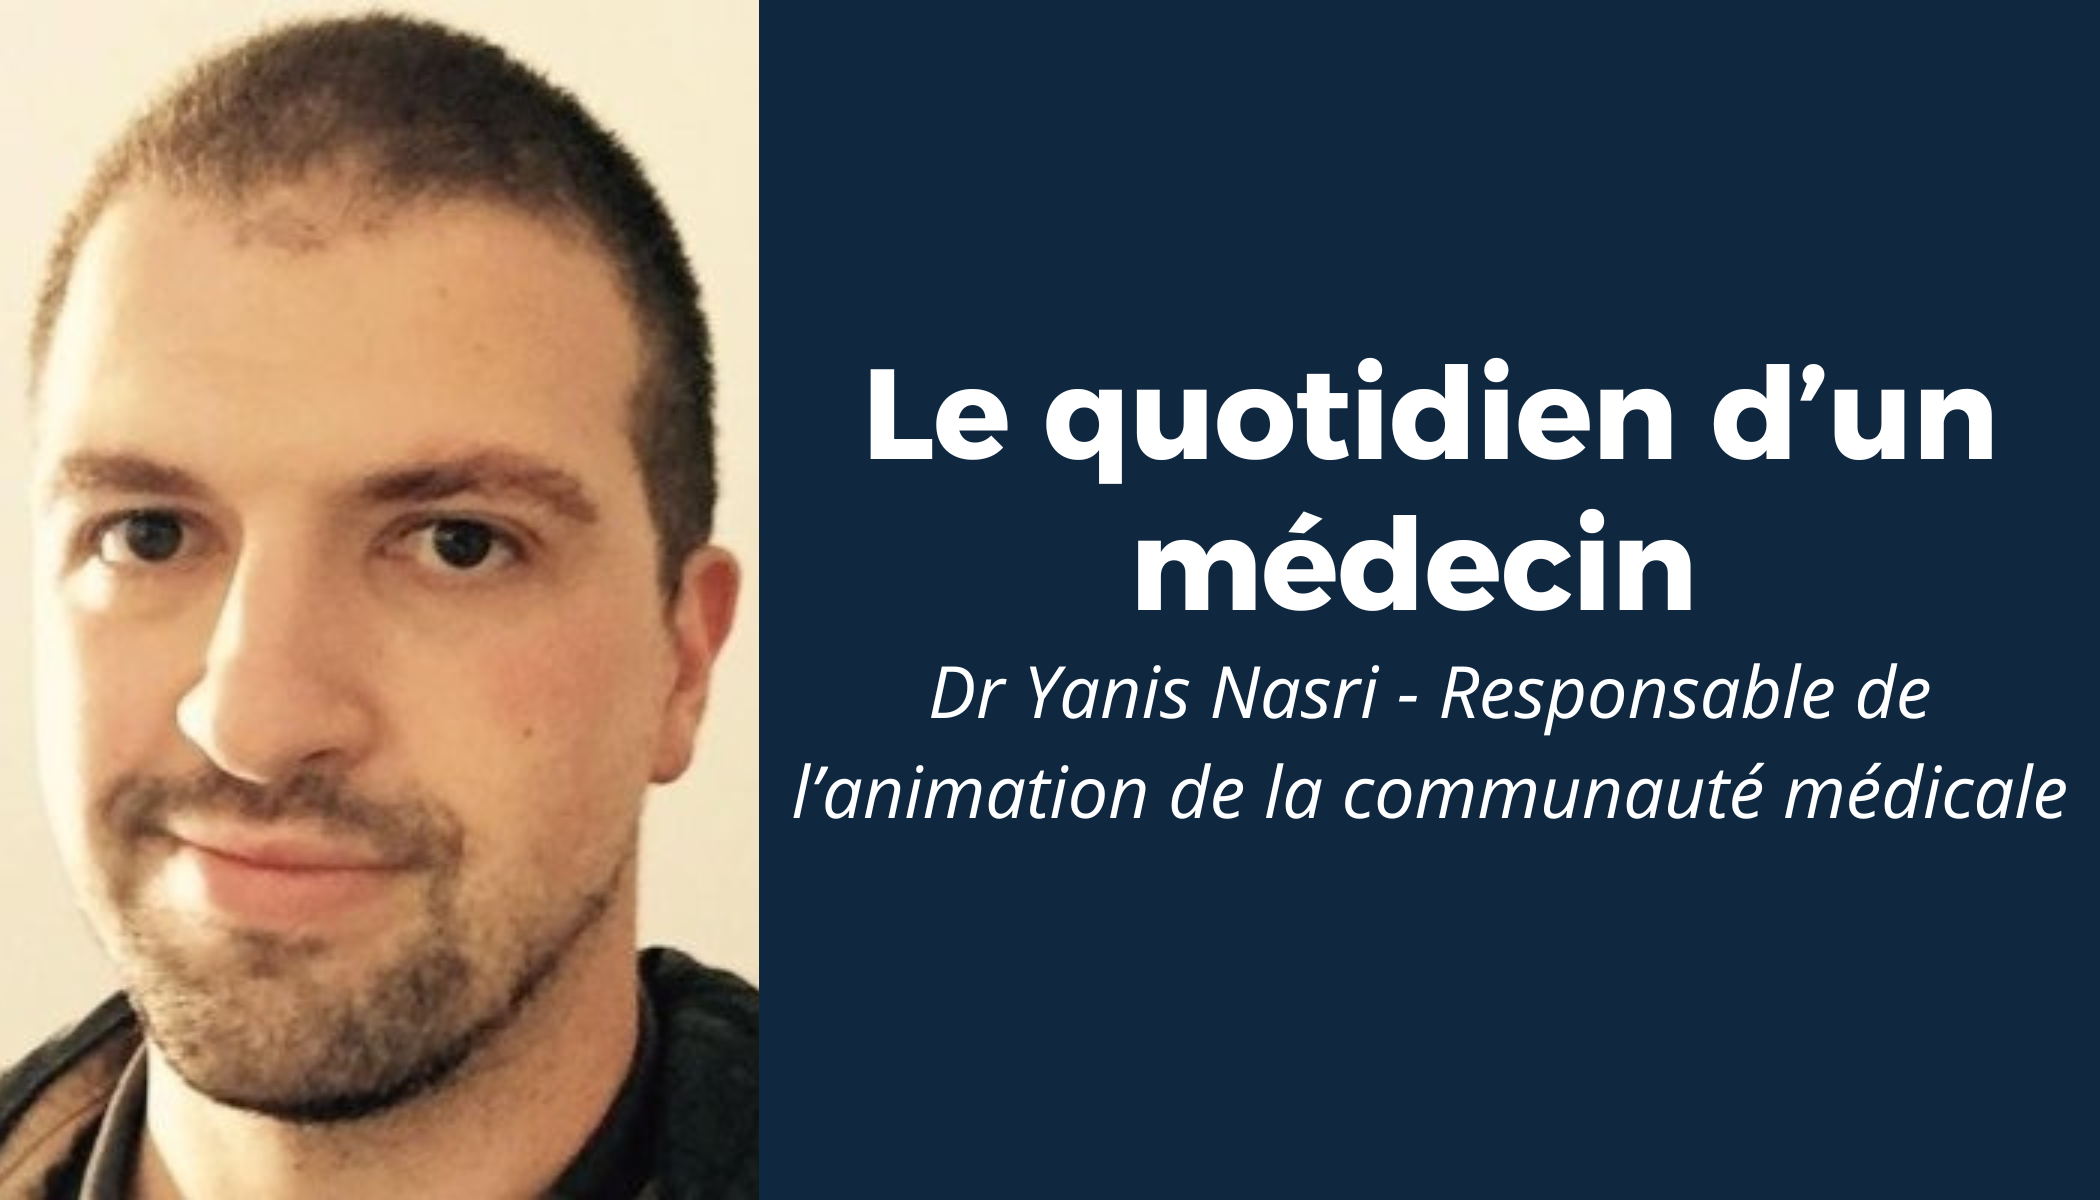 “Le quotidien d’un médecin” #7 - Rencontre avec le Dr Yanis Nasri 